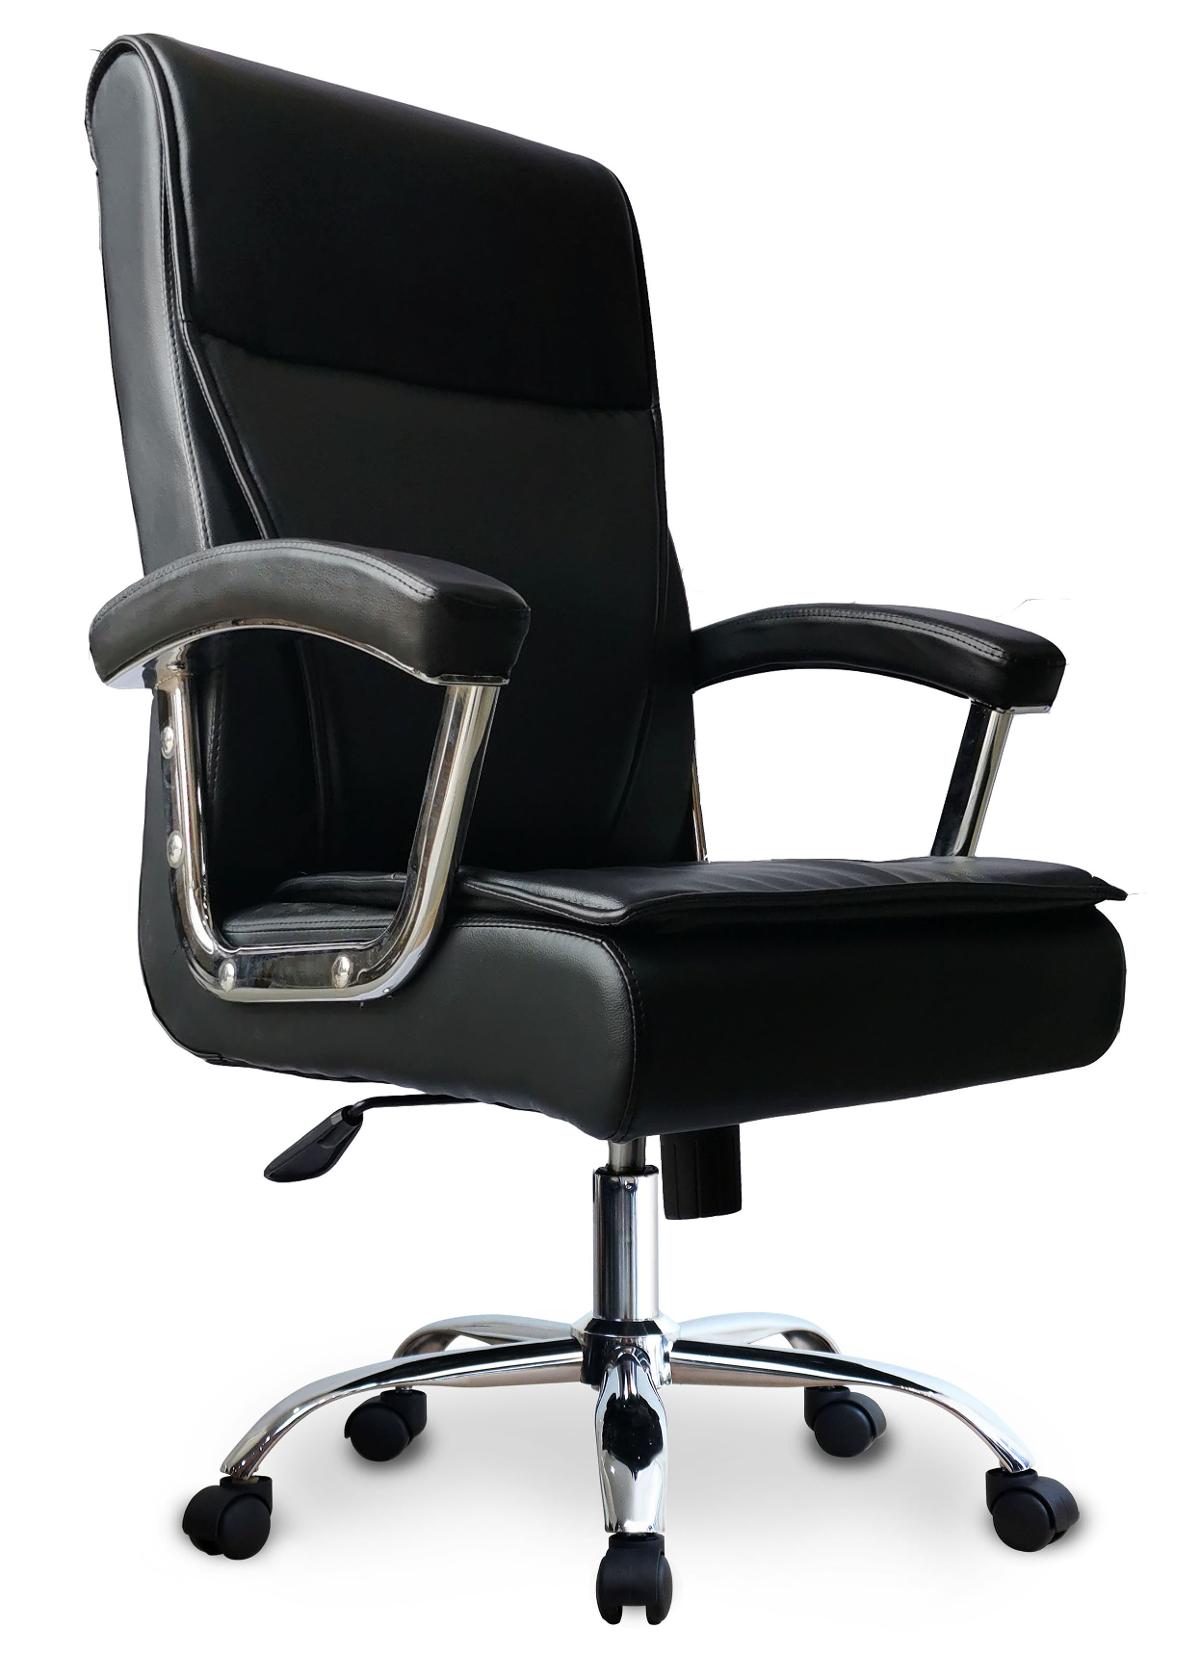 เก้าอี้ผู้บริหาร รุ่น PK8007-MT